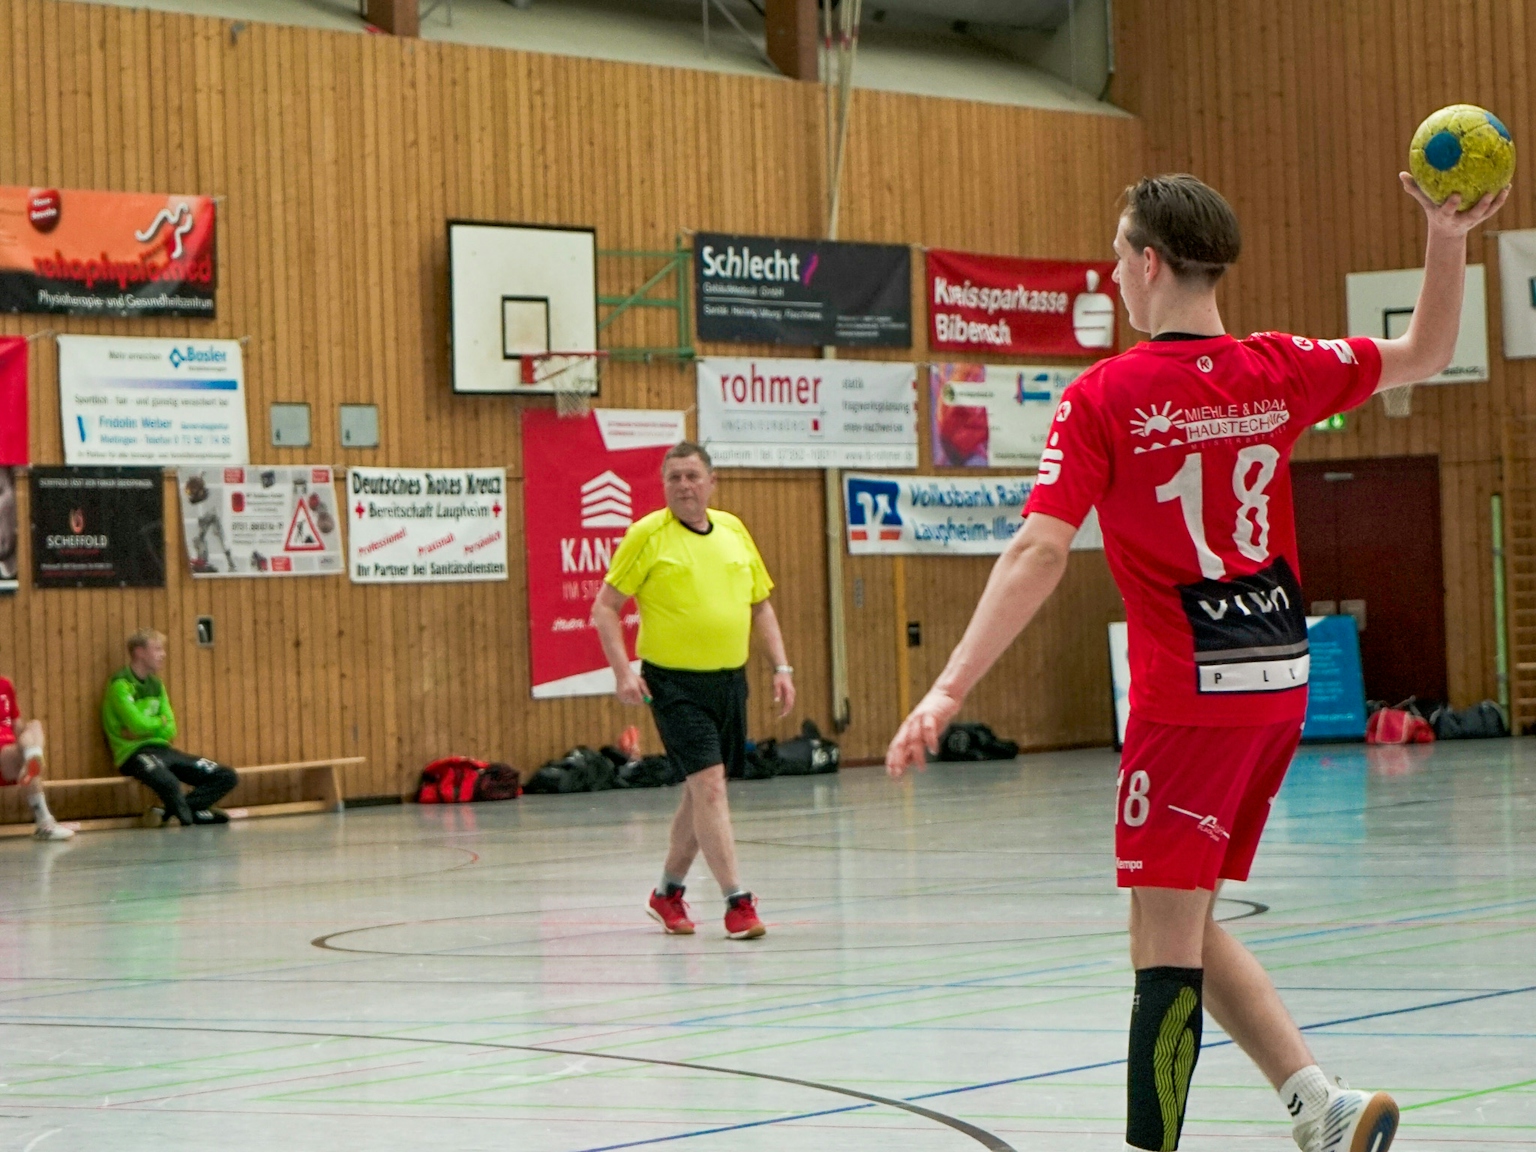 In einer Turnhalle,im Vordergrund auf der rechten Seite ist ein Handballspieler des HRW mit rotem Trikot im Begriff den Ball zu werfen. im Mittelgrung im Zentrum des Bilds steht der Schiedsrichter mit gelbem T-shirt. Im Hintegrund sind Auswechselspieler auf einer Bank und Sponsorenplakate zu sehen.